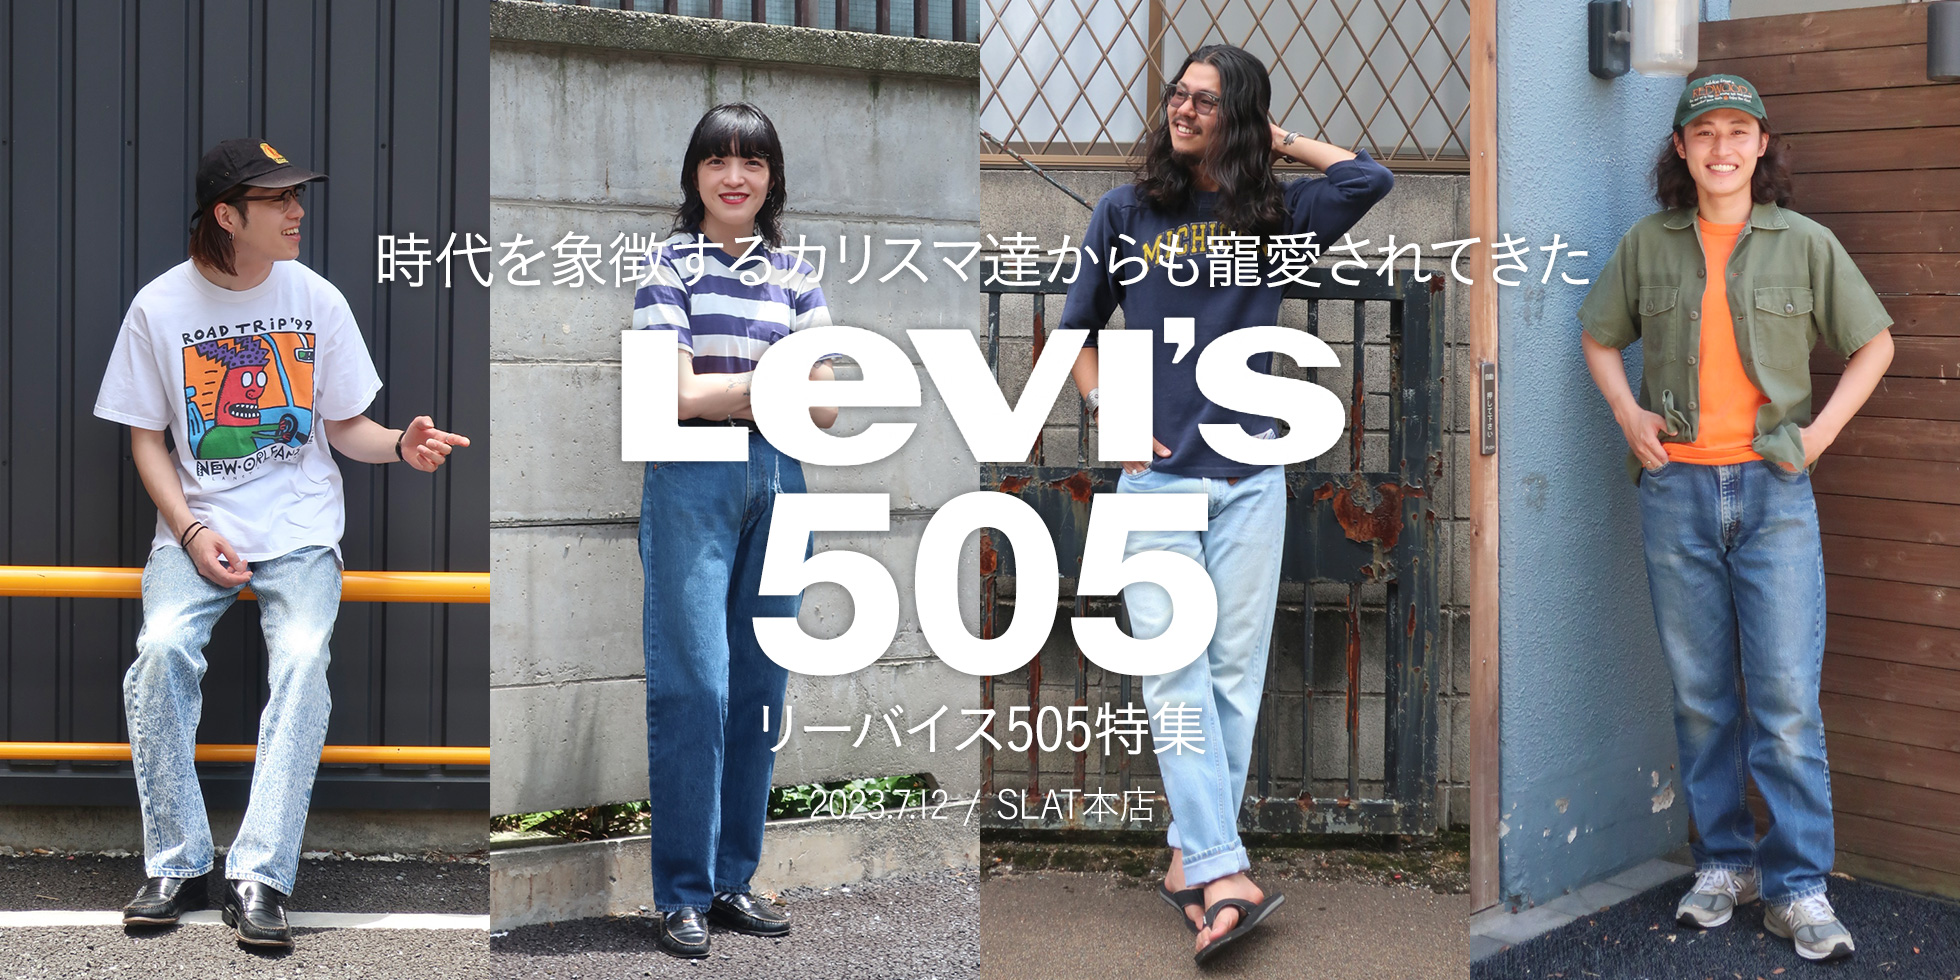 カリスマ達からも寵愛されてきた”Levi’s 505” リーバイス505特集